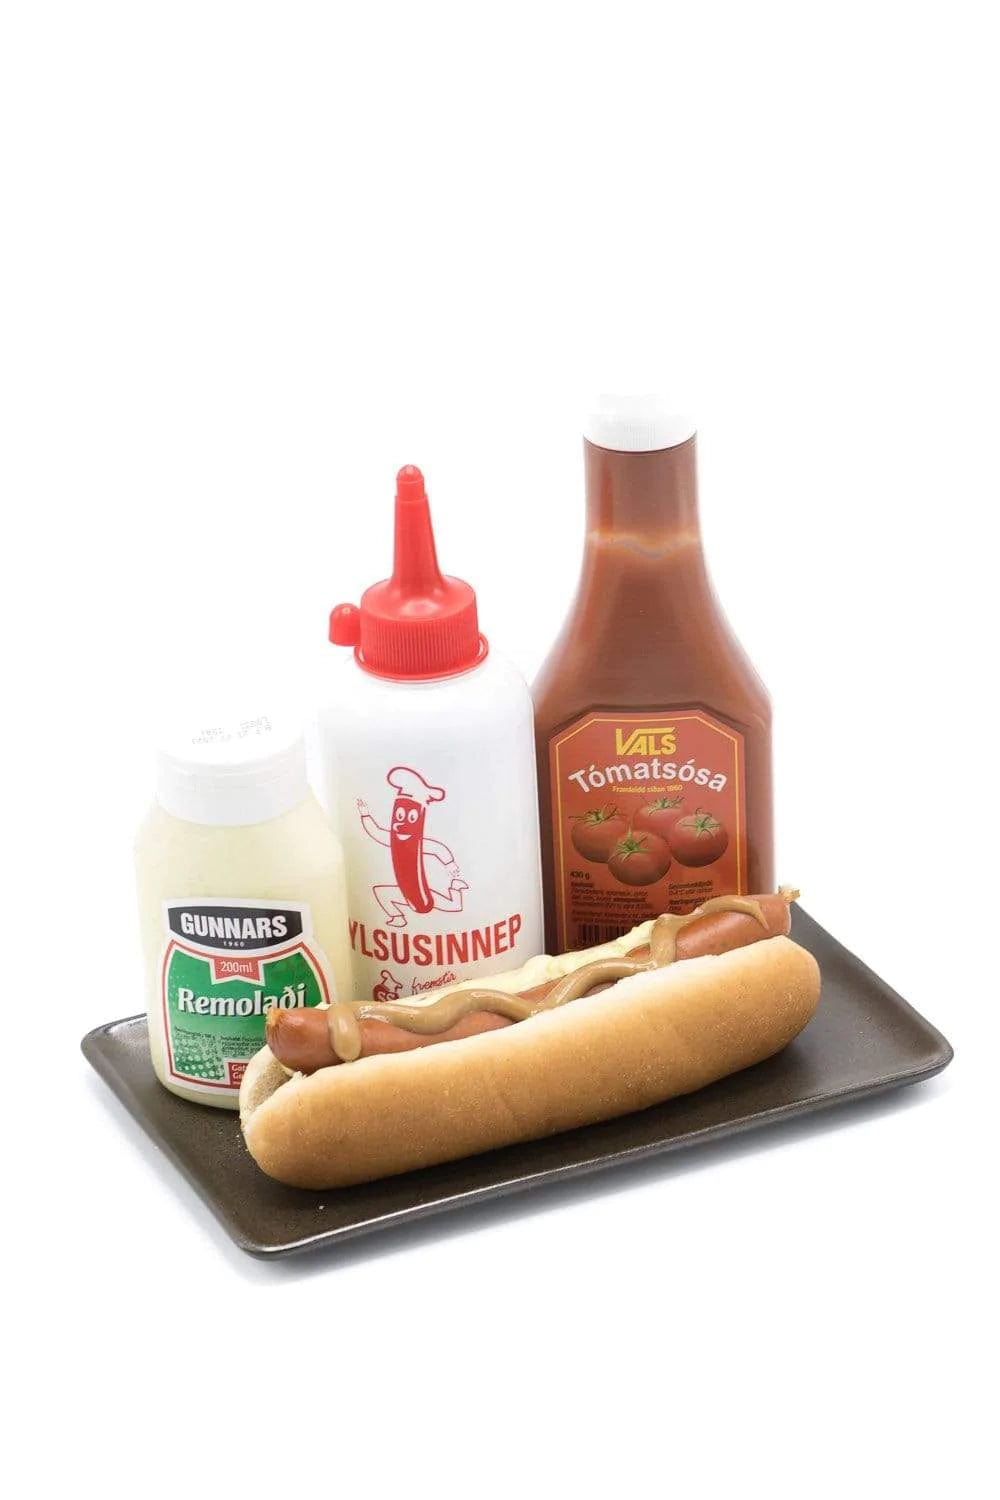 Icelandic hot dog with ketchup, mustard and remuladi